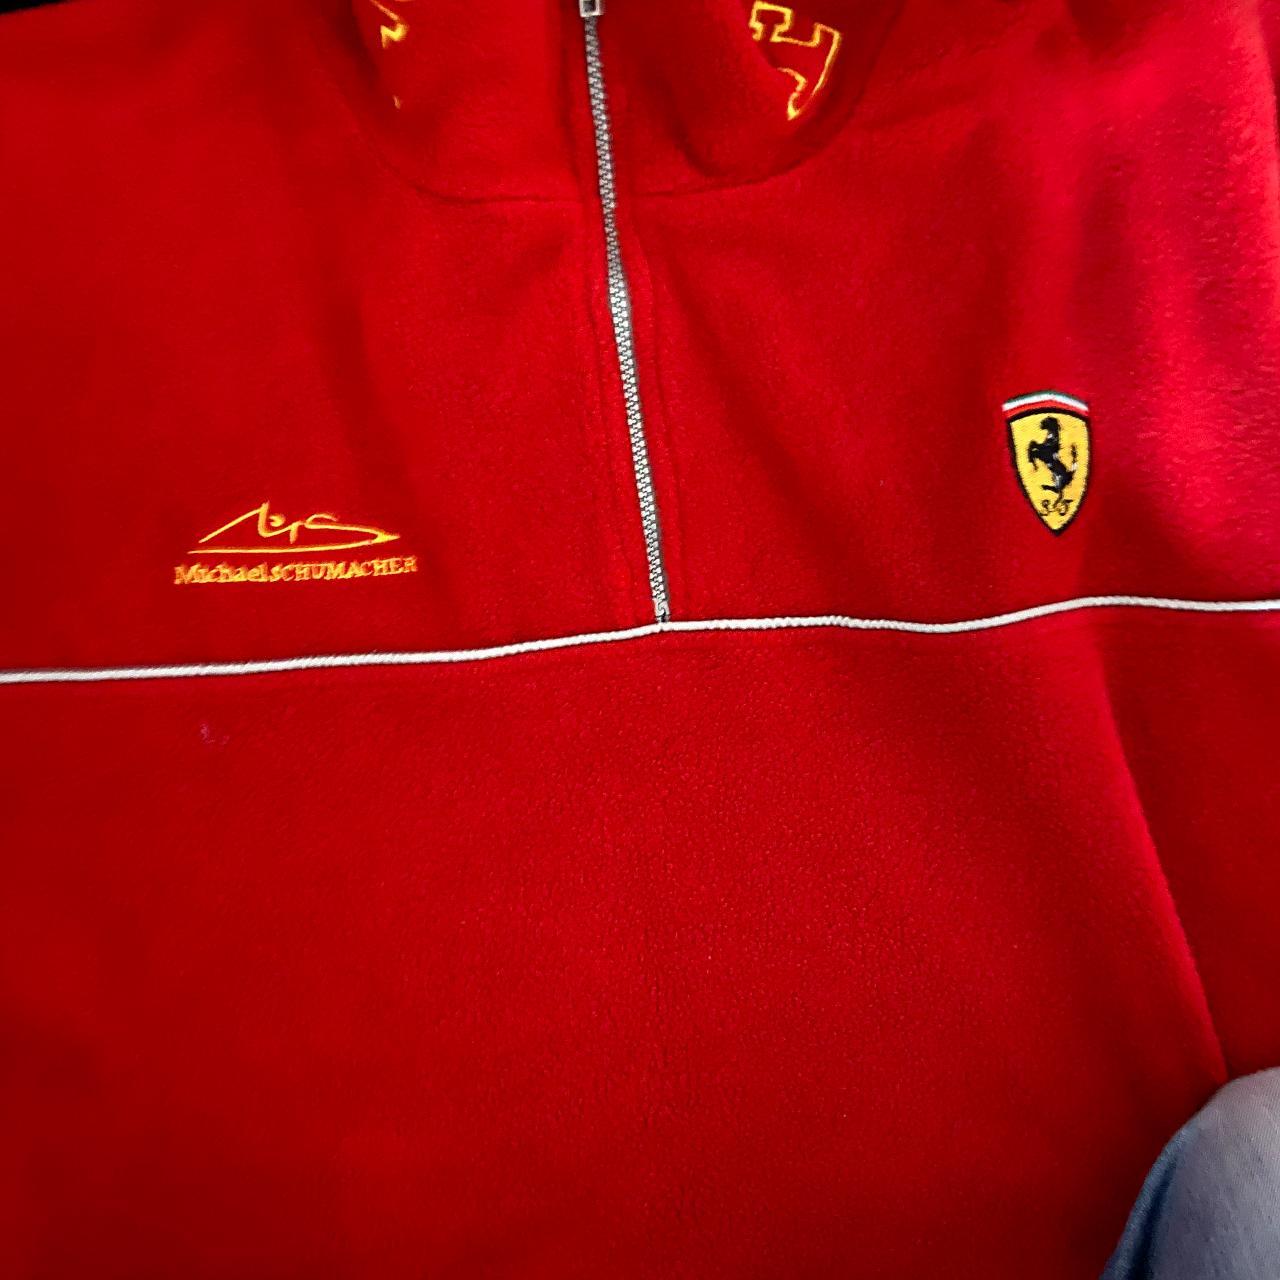 Vintage Ferrari Racing Michael Schumacher Fleece... - Depop